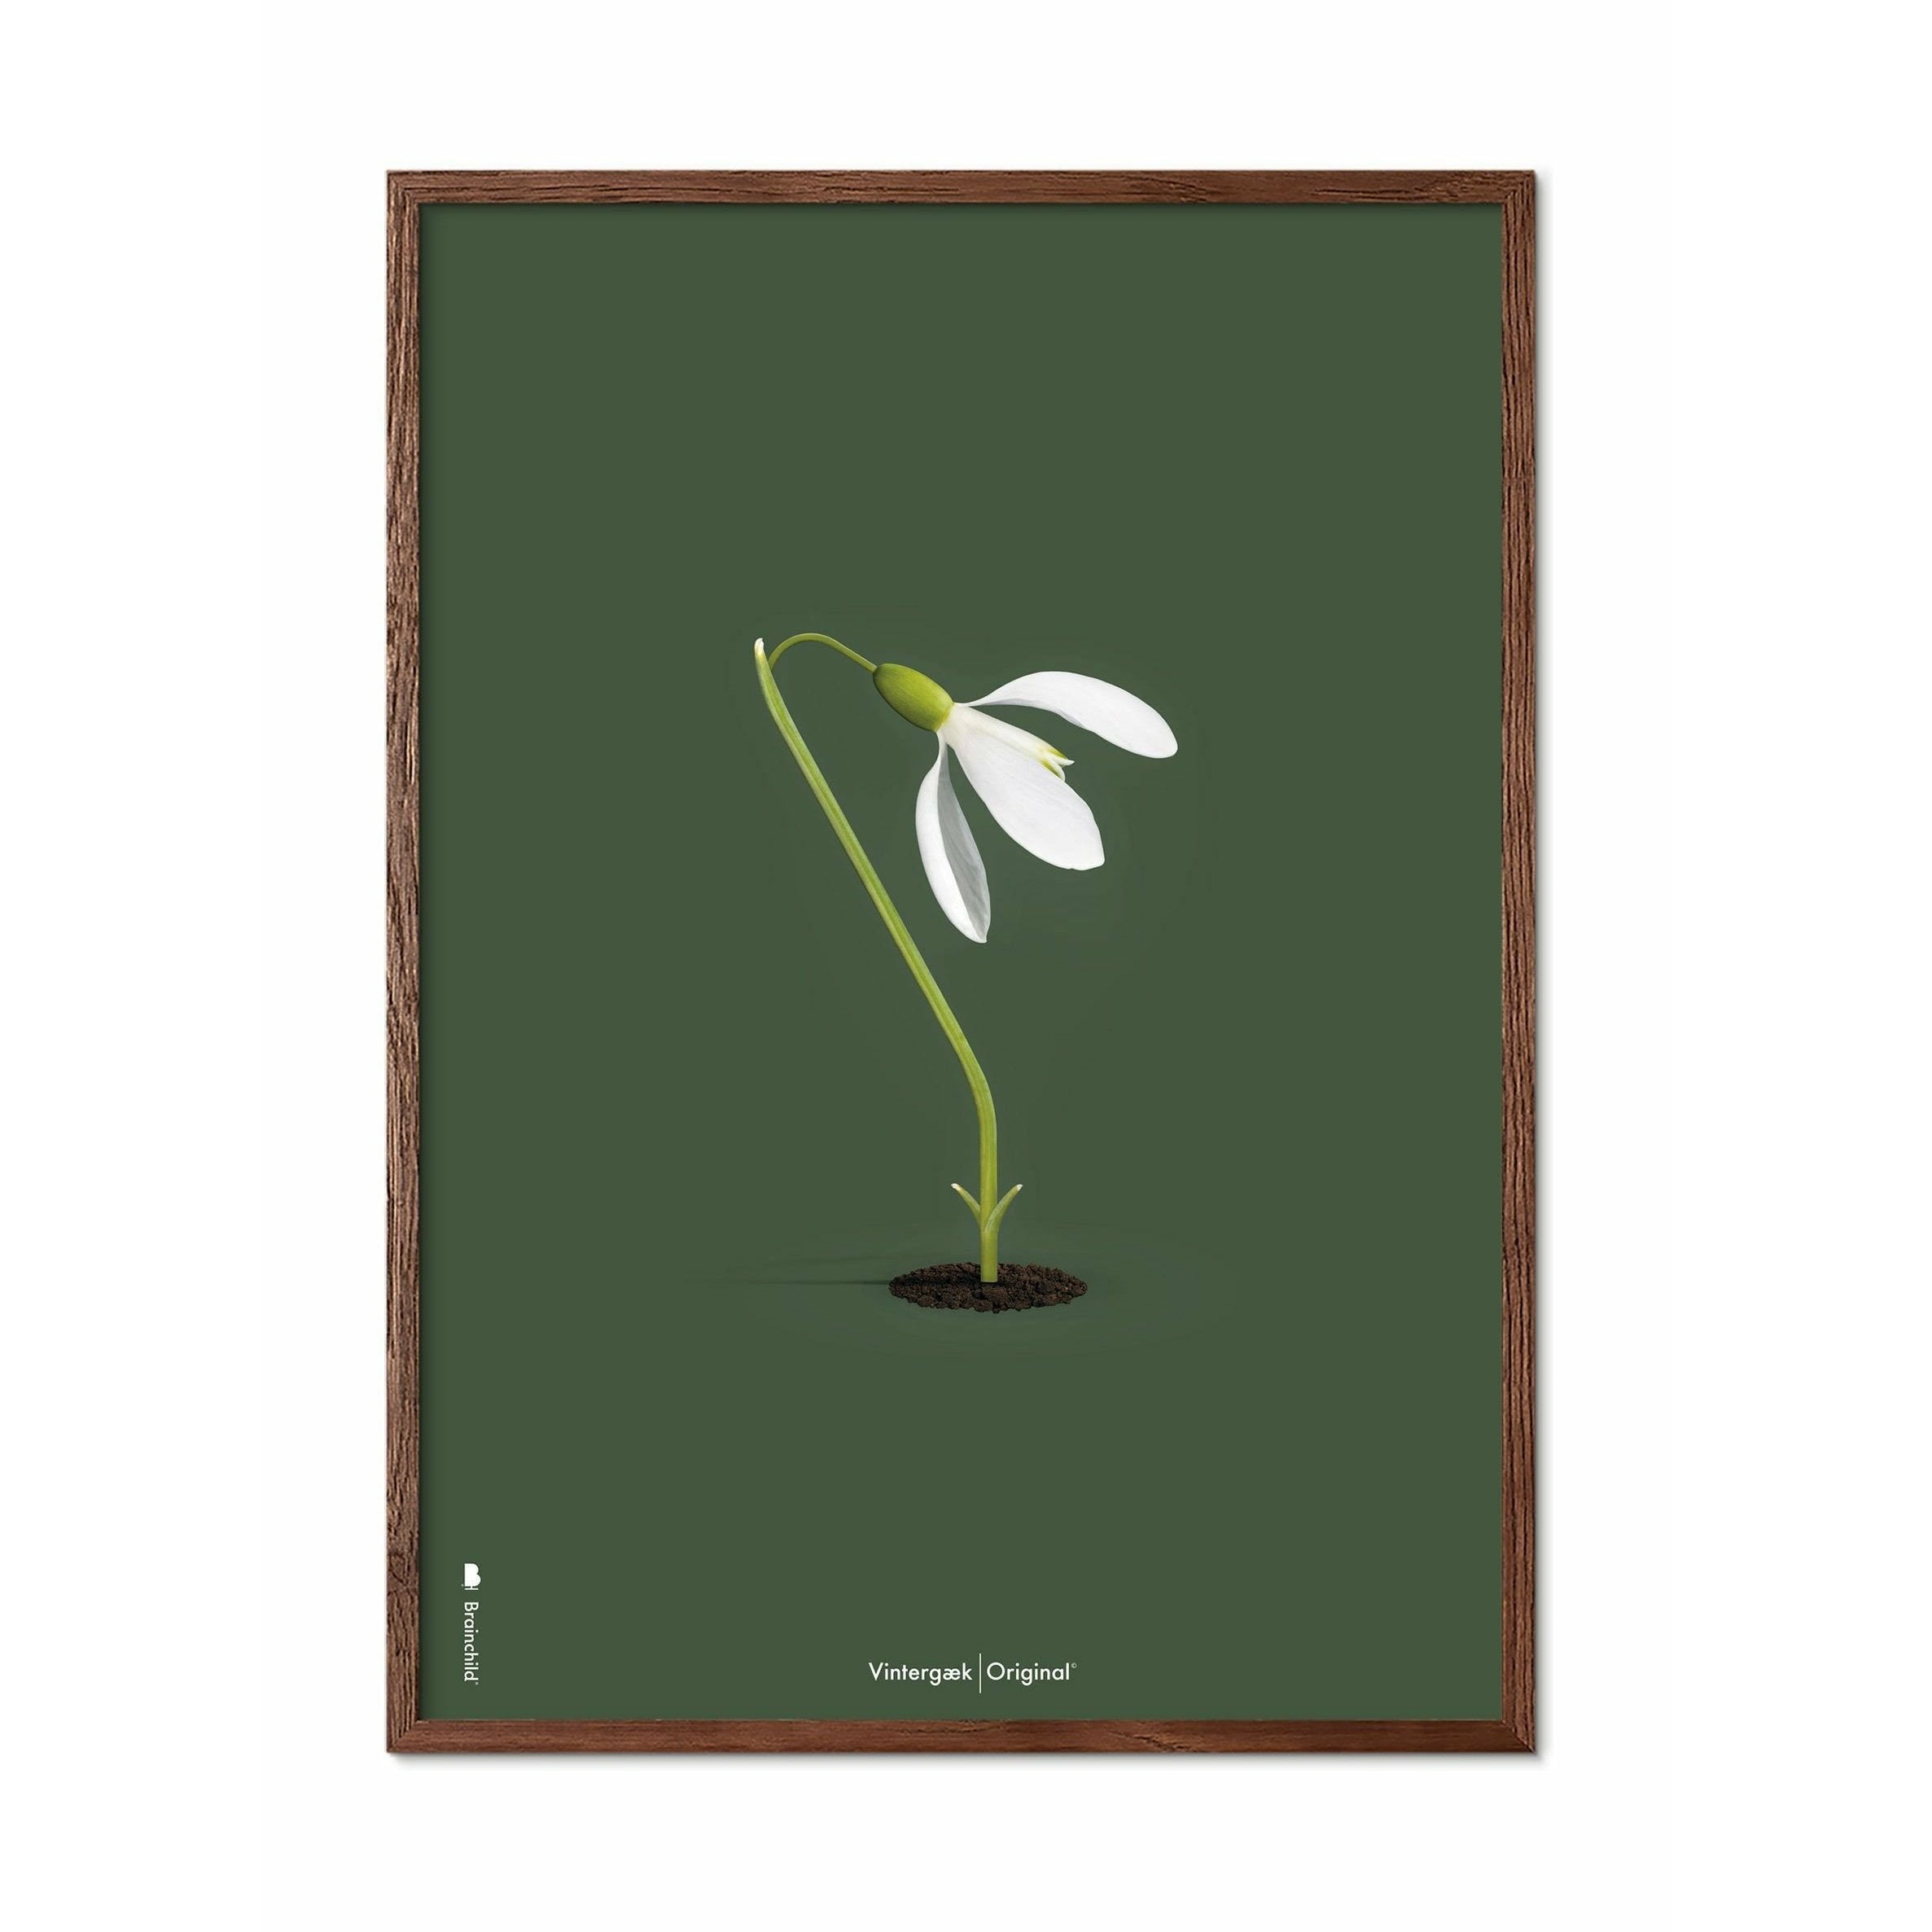 brainchild Snowdrop Classic juliste, kehys, joka on valmistettu tummasta puusta 30x40 cm, vihreä tausta